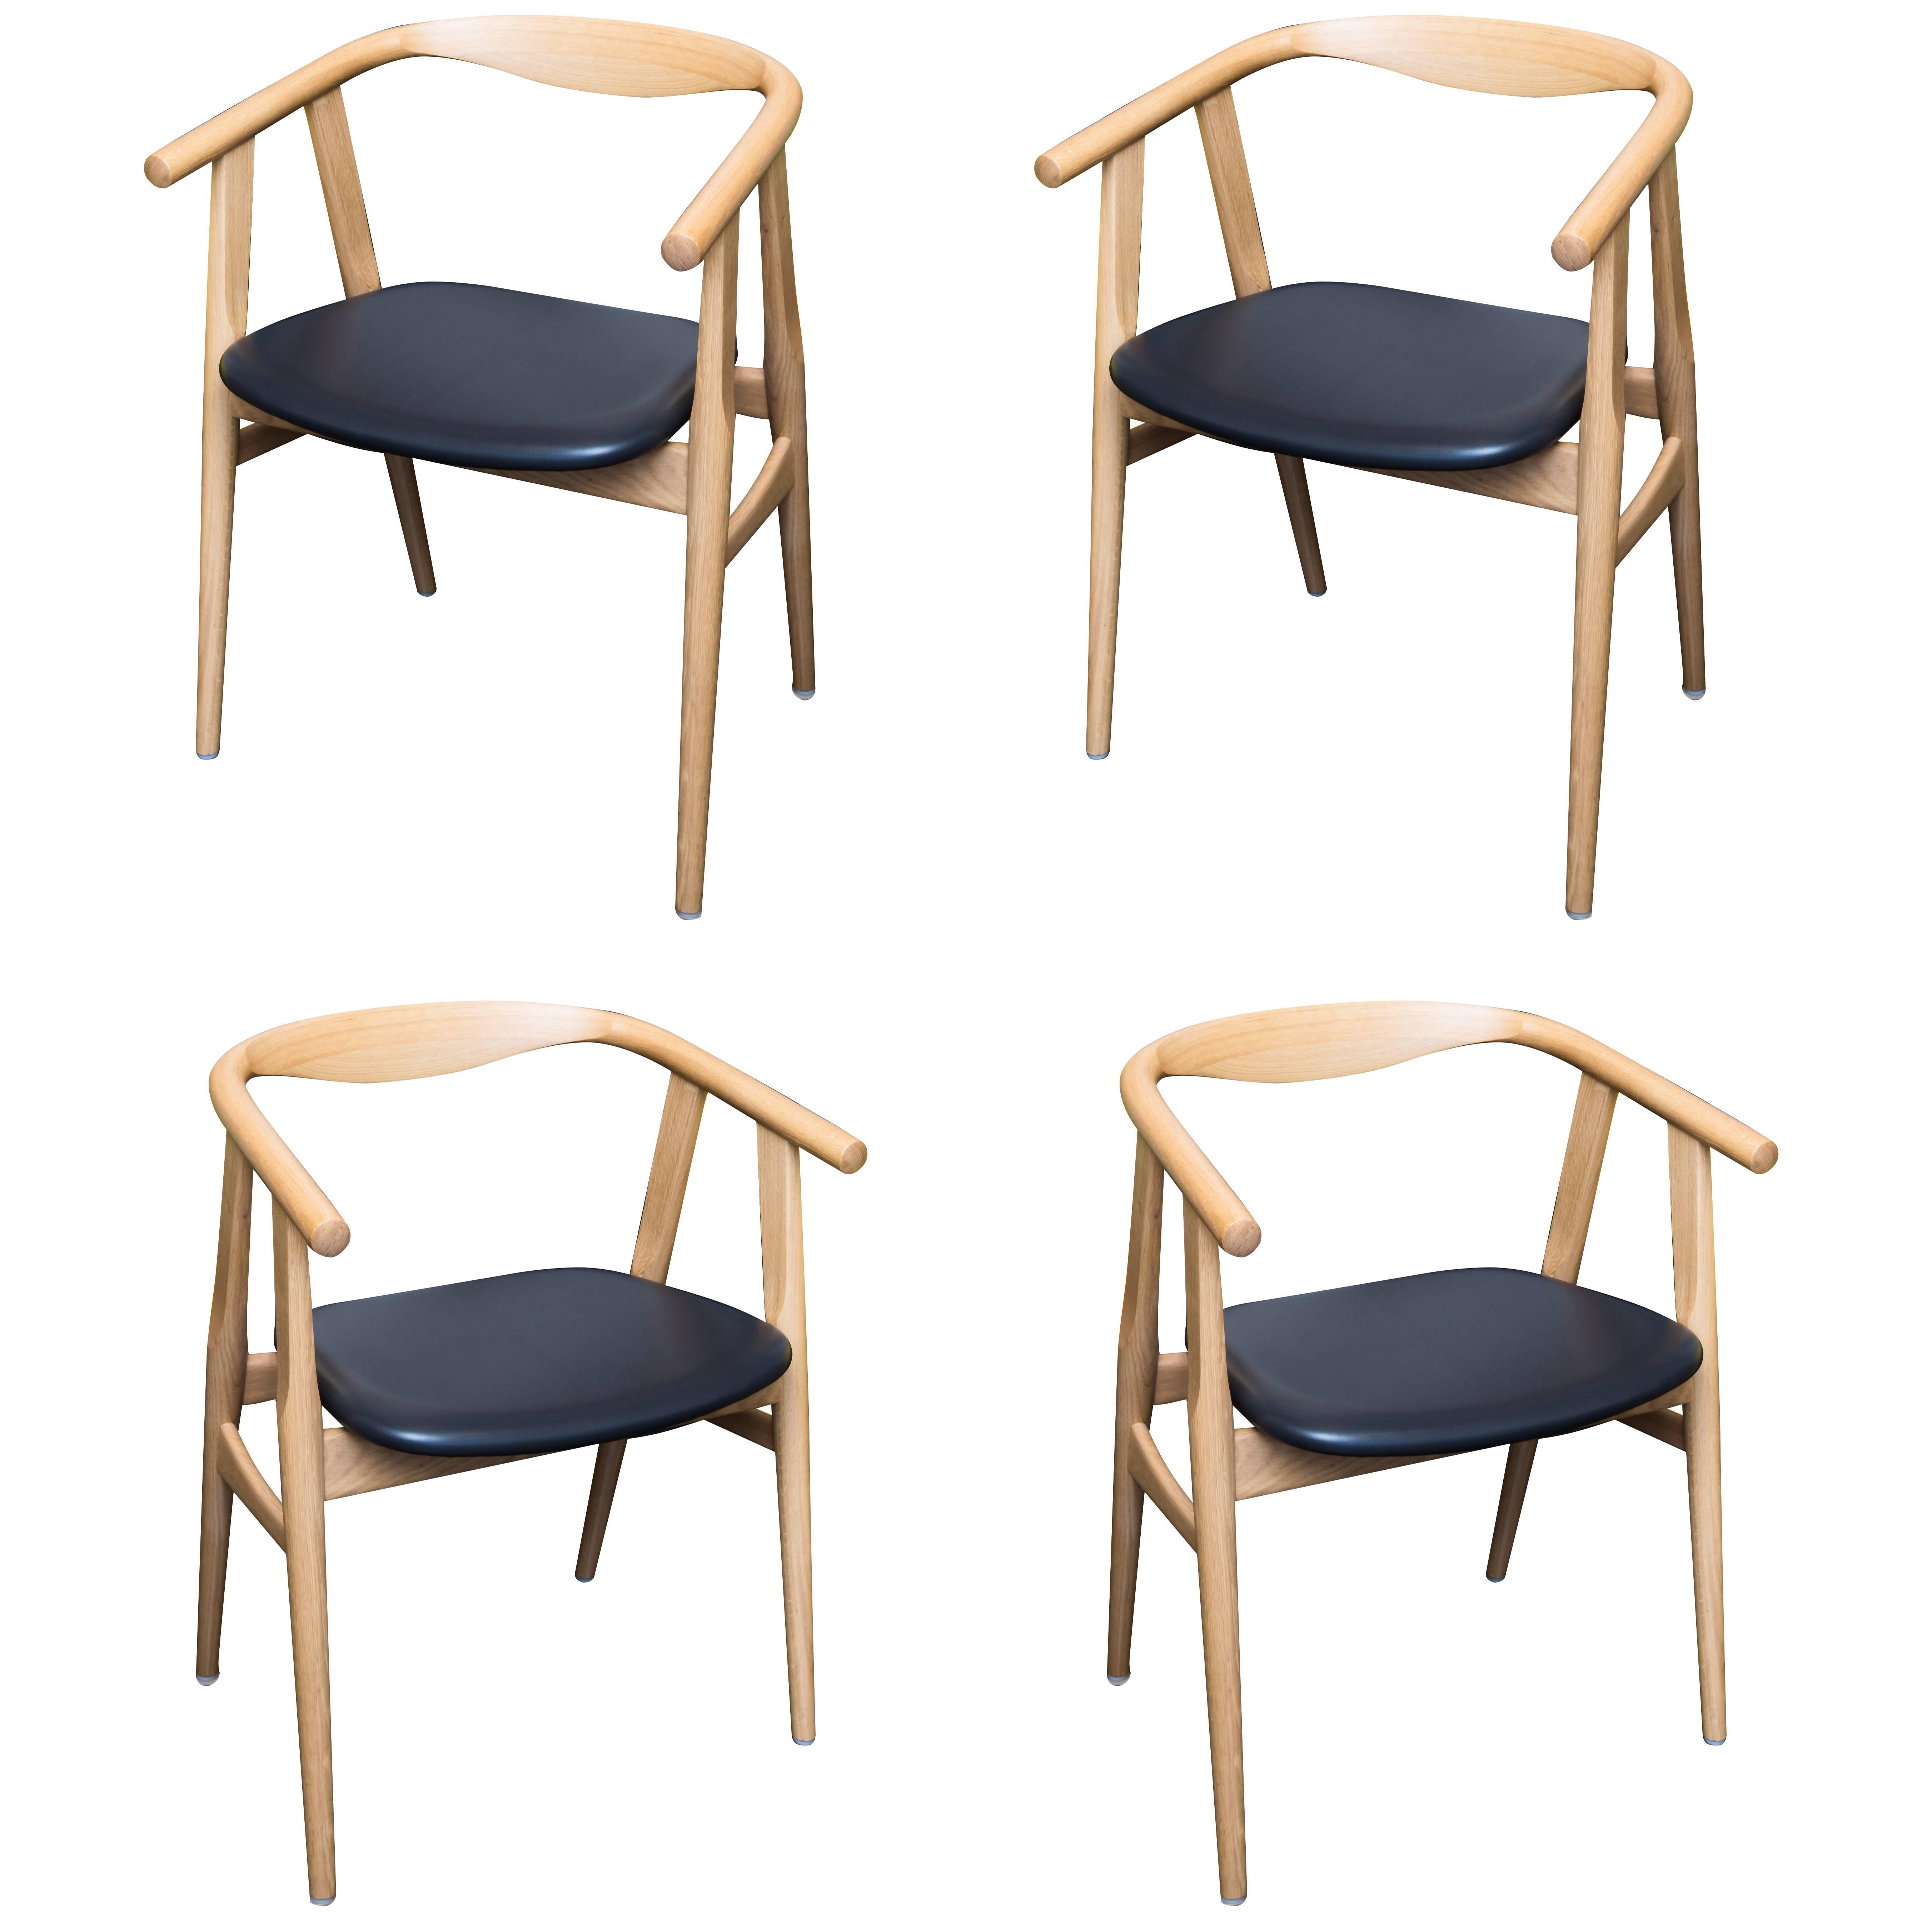  Hans Wegner 525 Chairs in Oak